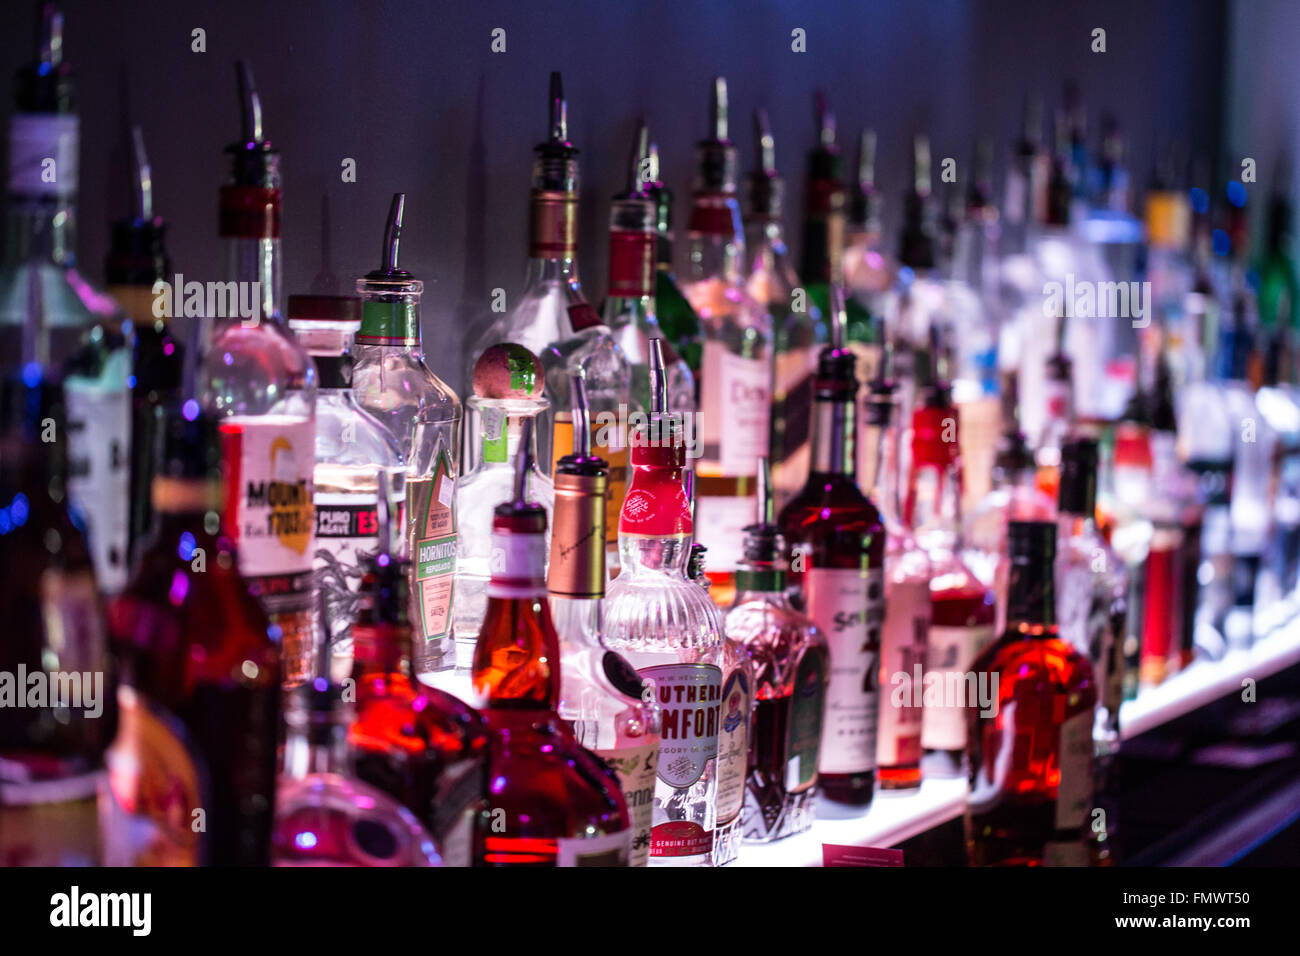 Bottles of liquor Stock Photo